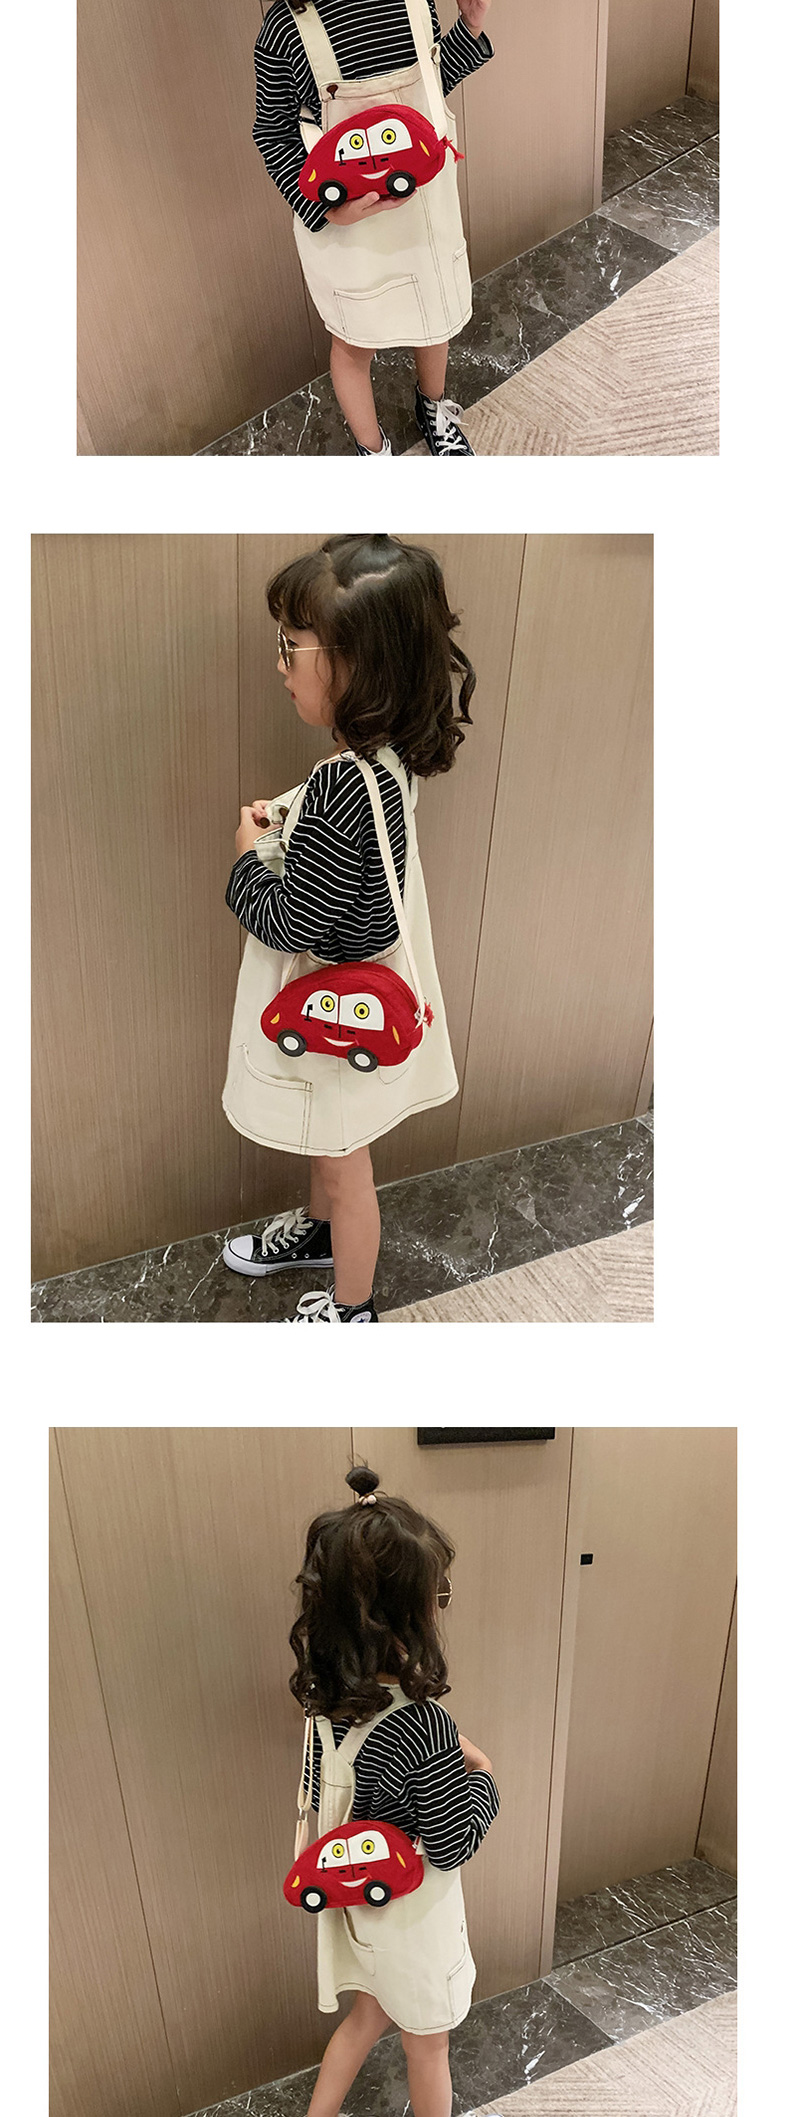 Fashion Blue Car Child Slung Shoulder Bag,Shoulder bags